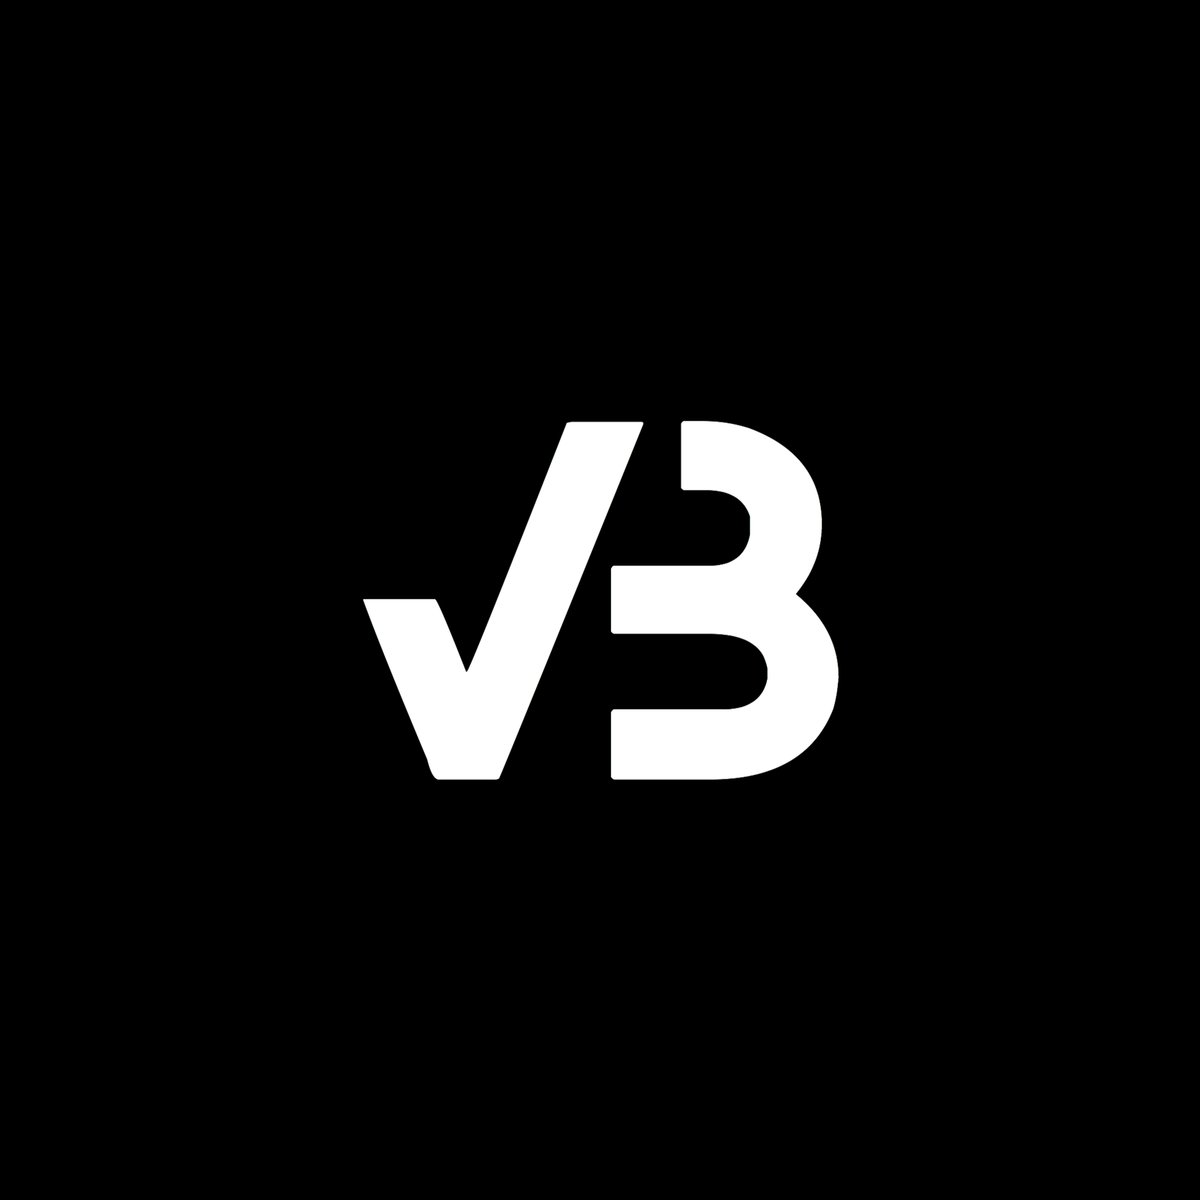 B вб. Vb логотип. Буква b логотип. Иконка ВБ. Буквы ВБ.